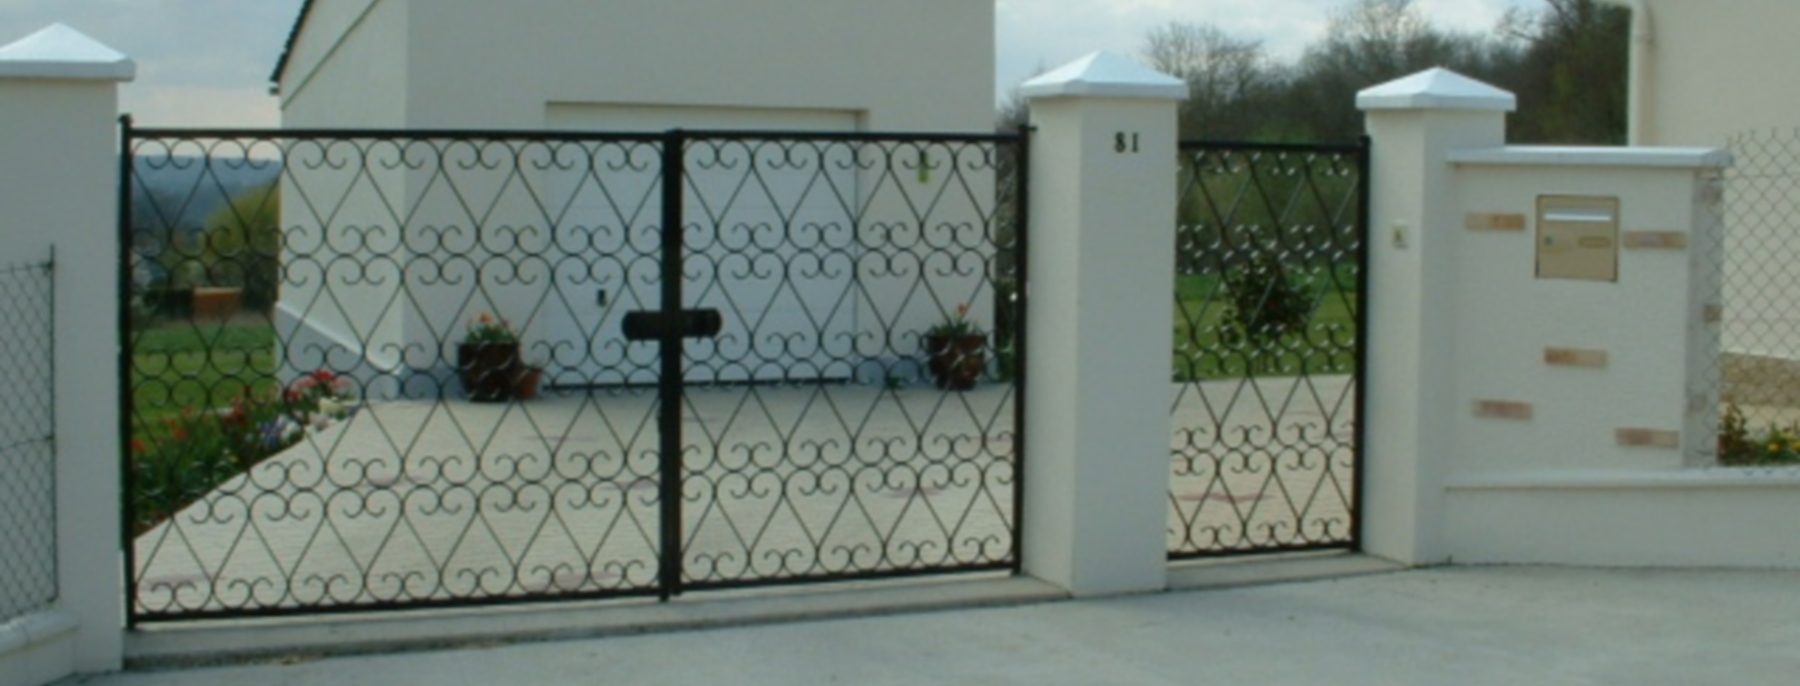 Cloture portail